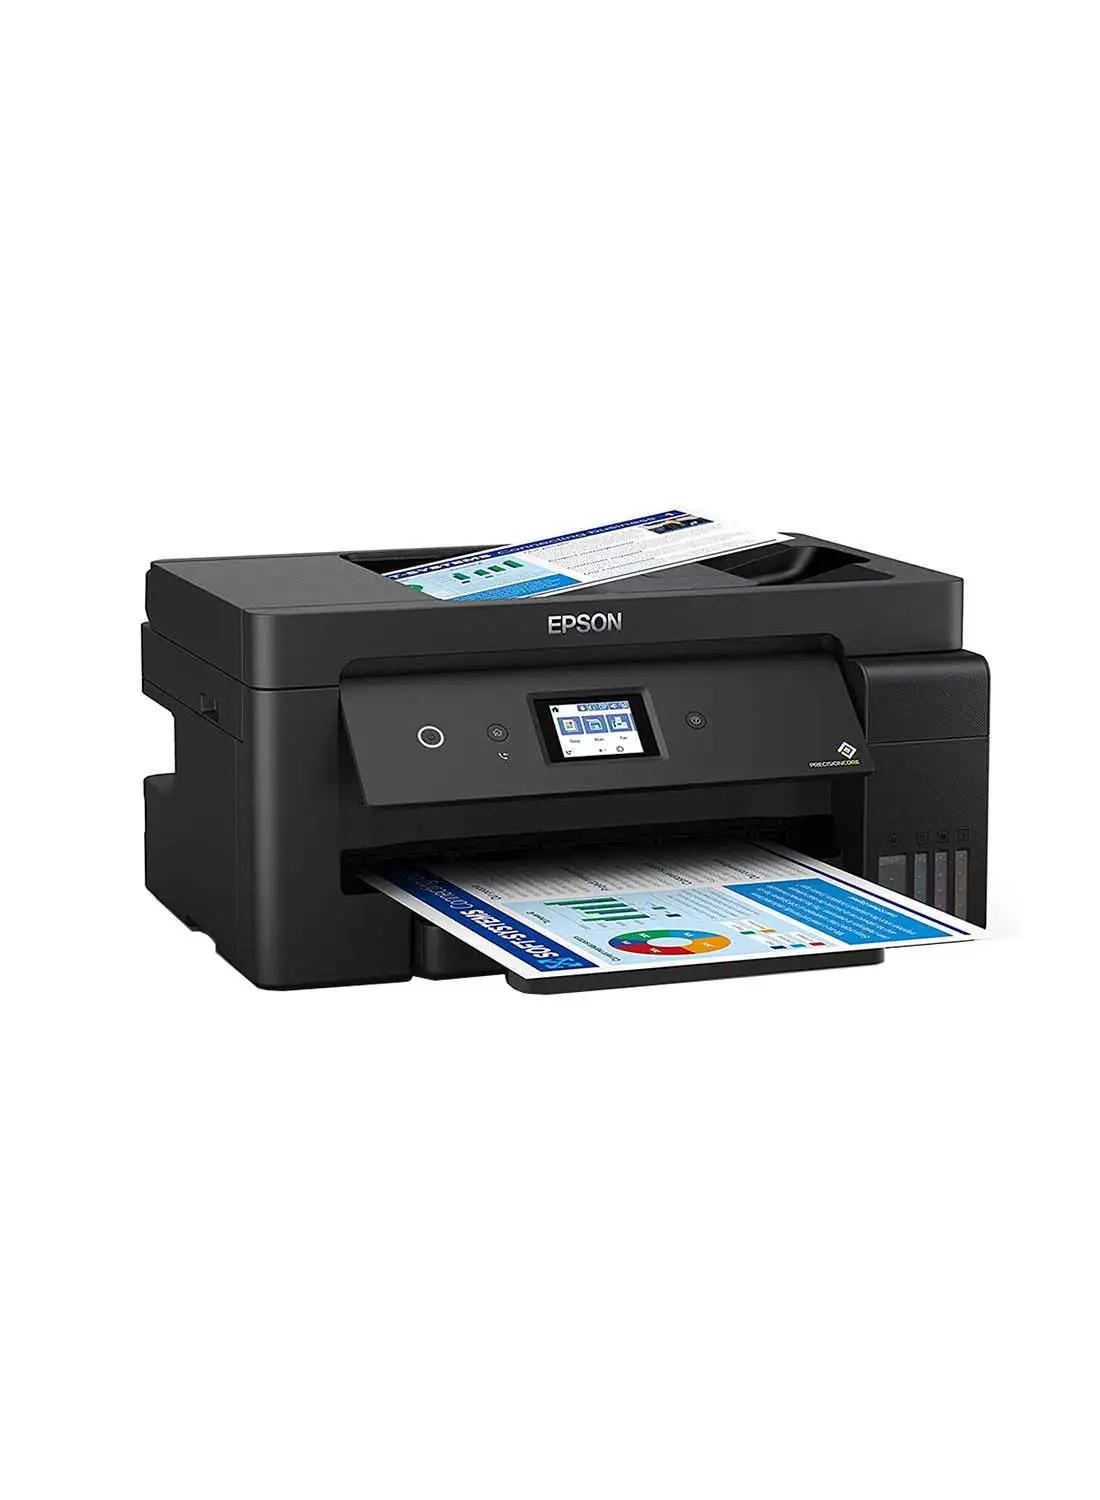 EPSON EcoTank L14150 A3+ Print/Scan/Copy/Fax Wi-Fi Business Tank Printer Black